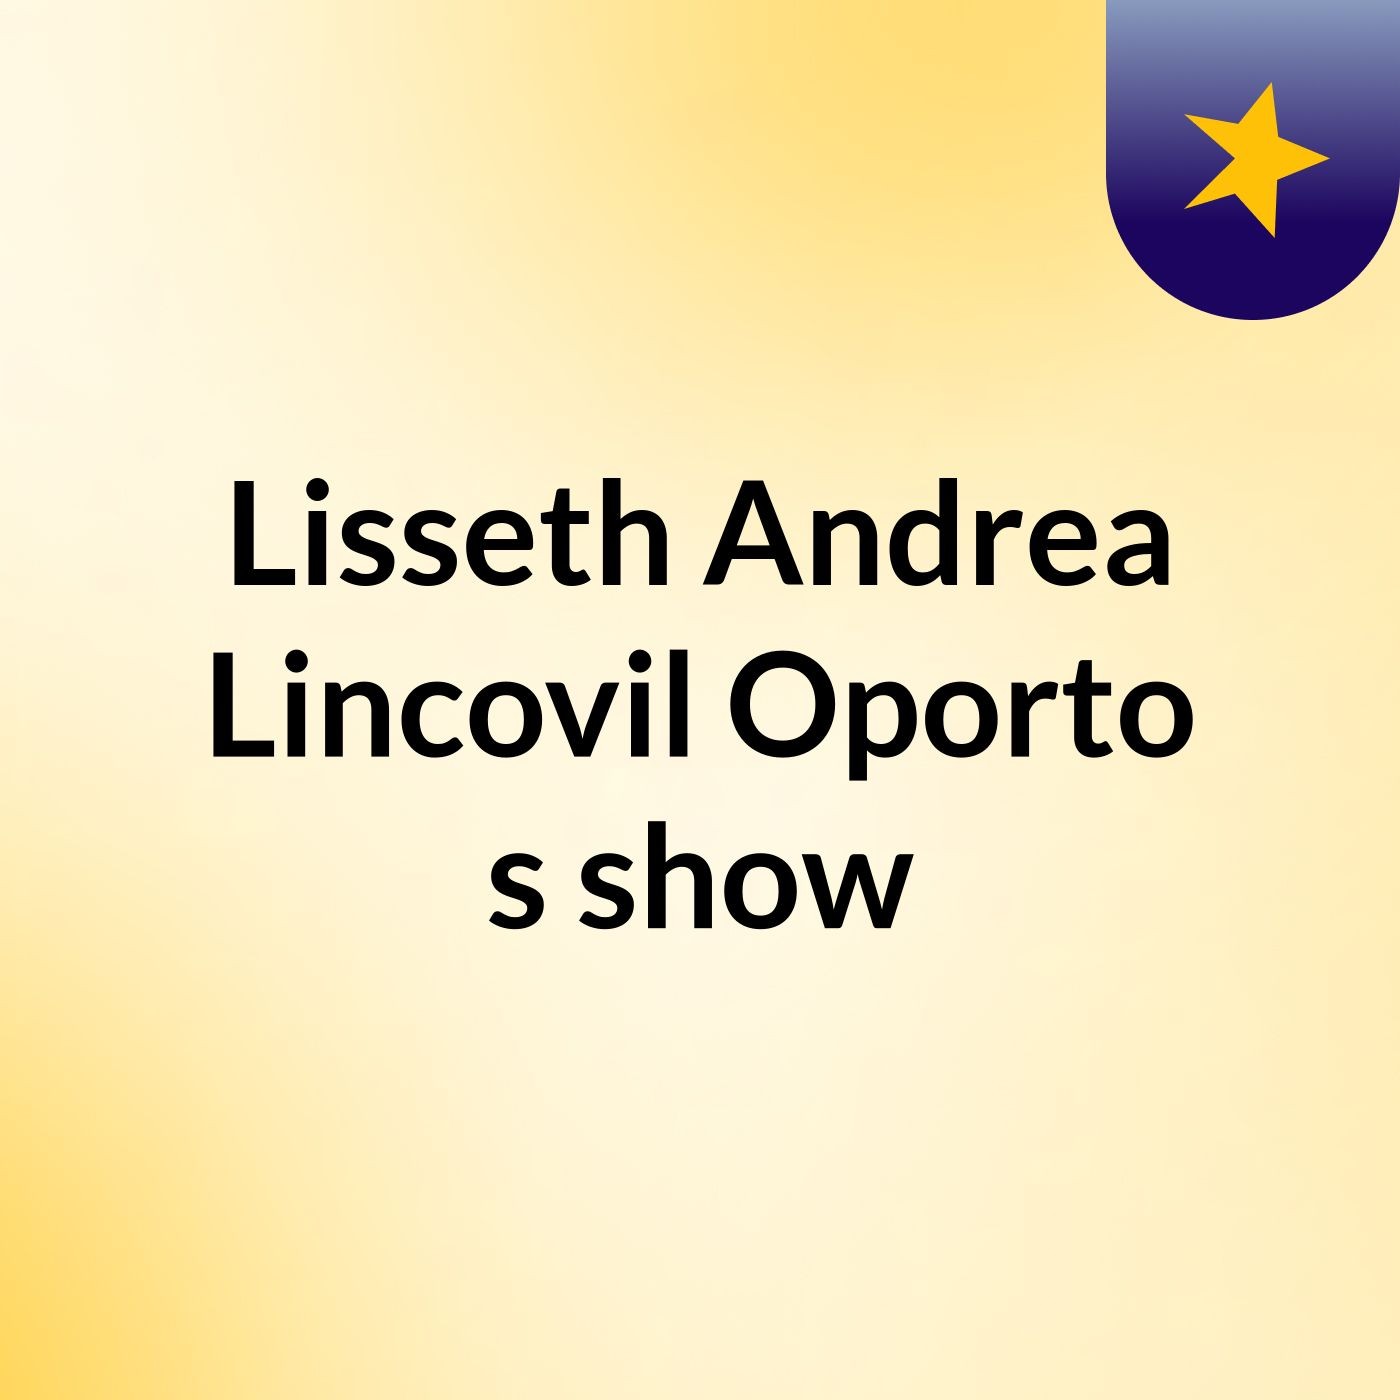 Lisseth Andrea Lincovil Oporto's show